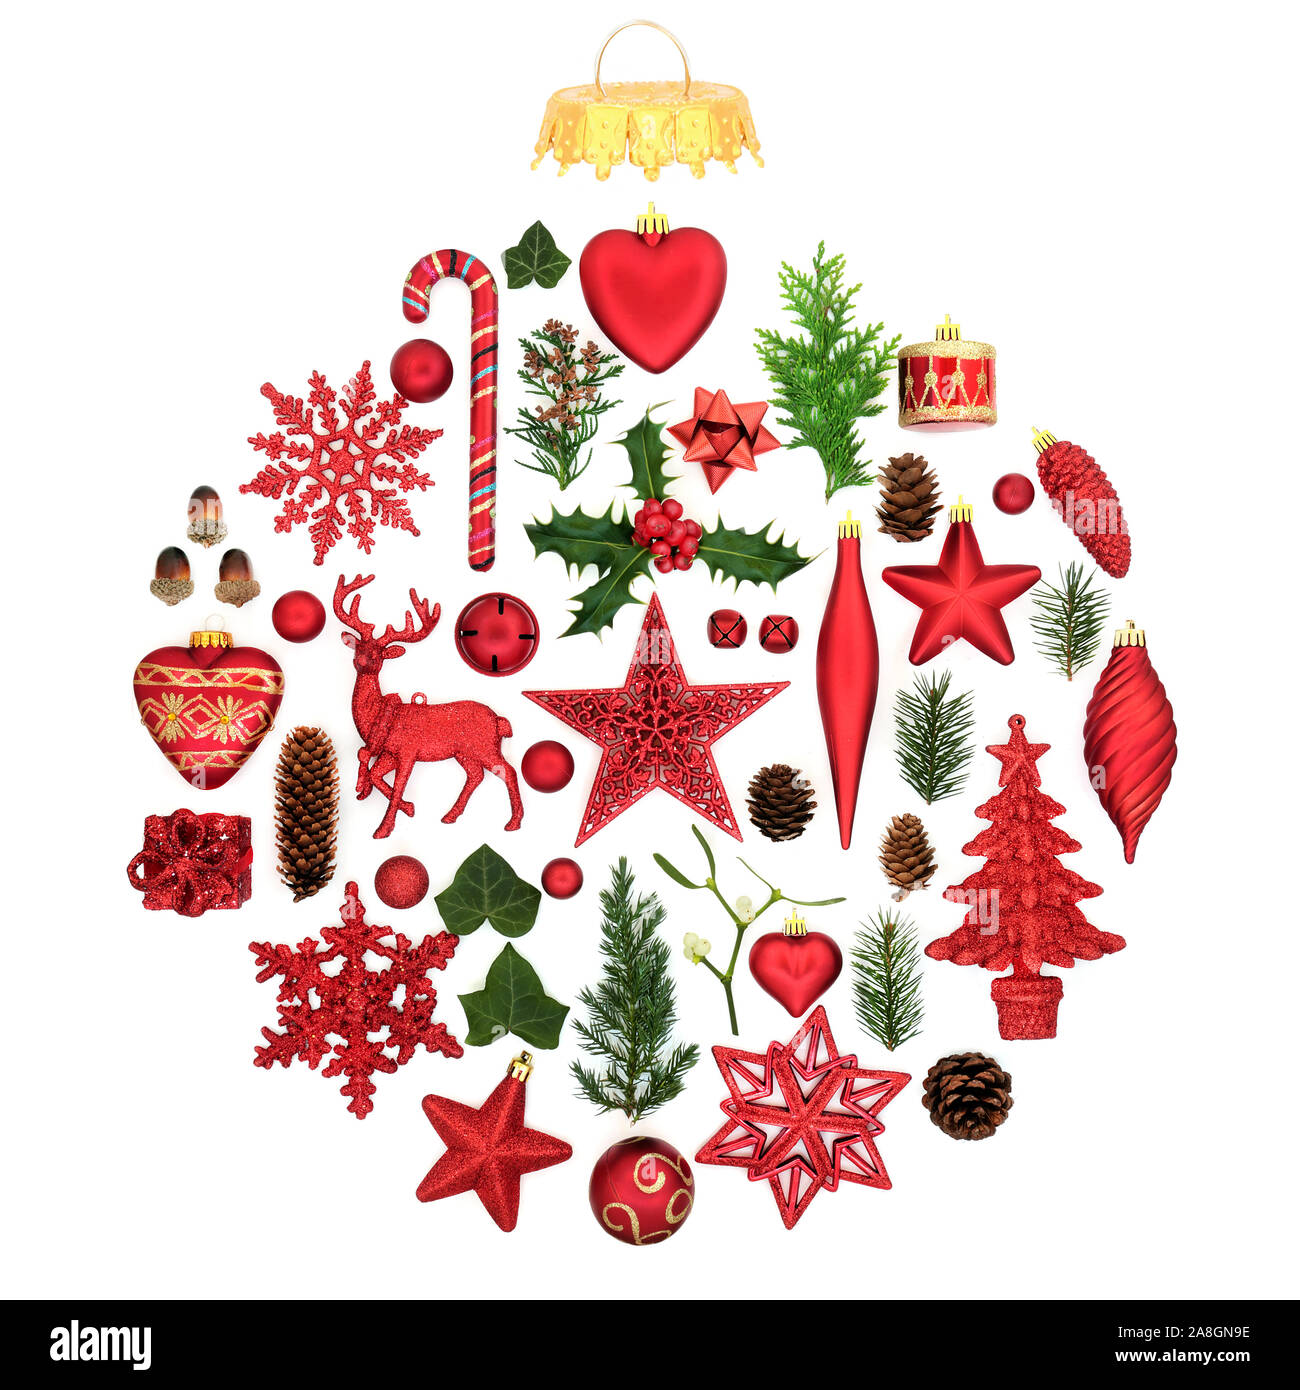 Décorations de Noël et d'hiver de flore formant un ornement babiole abstraite sur fond blanc. Symbole traditionnel pour les fêtes. Banque D'Images